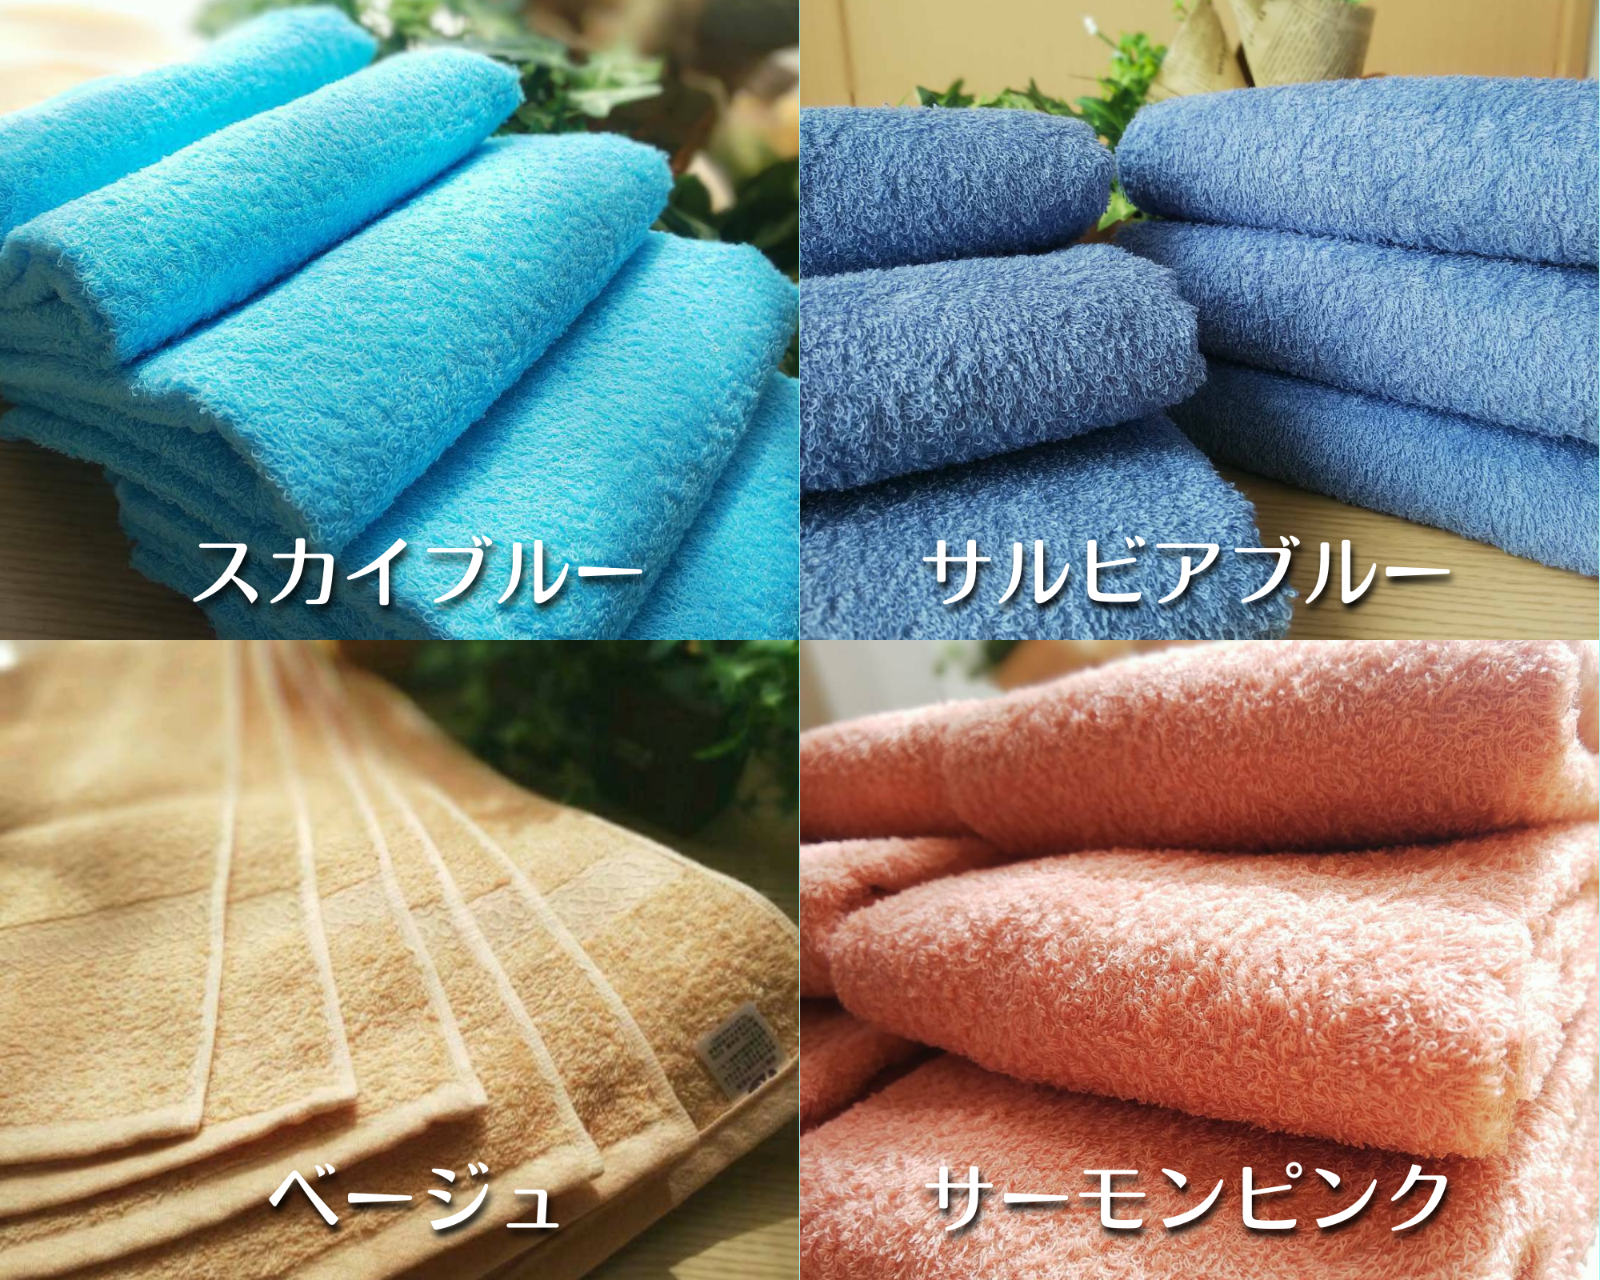 泉州タオル 高級綿糸サルビアブルーバスタオルセット2枚組 まとめ タオル新品